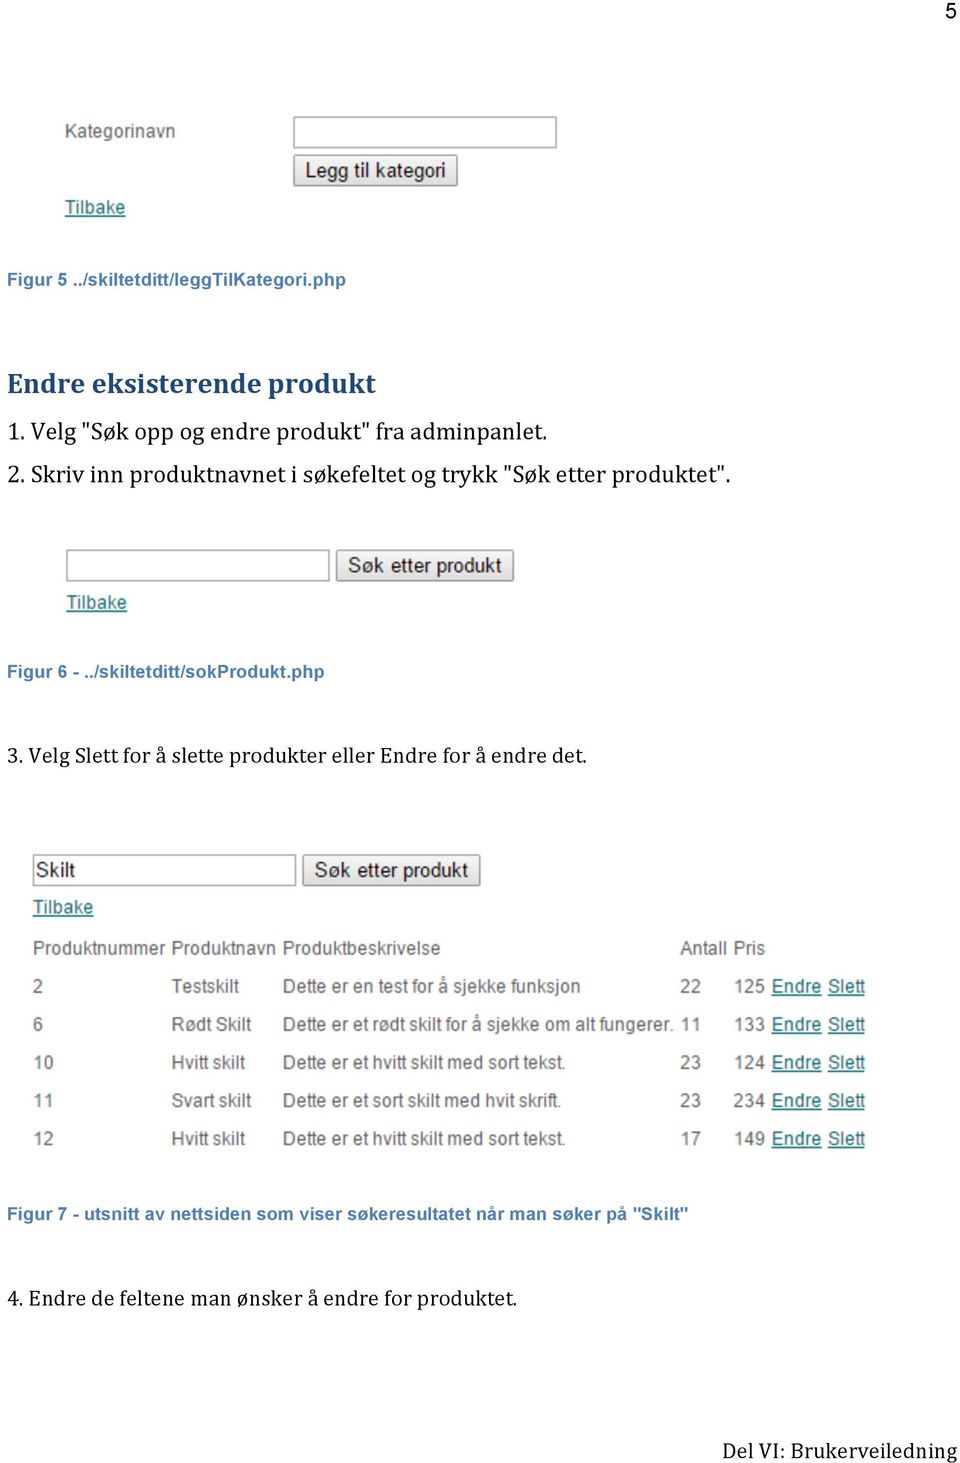 Skriv inn produktnavnet i søkefeltet og trykk "Søk etter produktet". Figur 6 -../skiltetditt/sokprodukt.